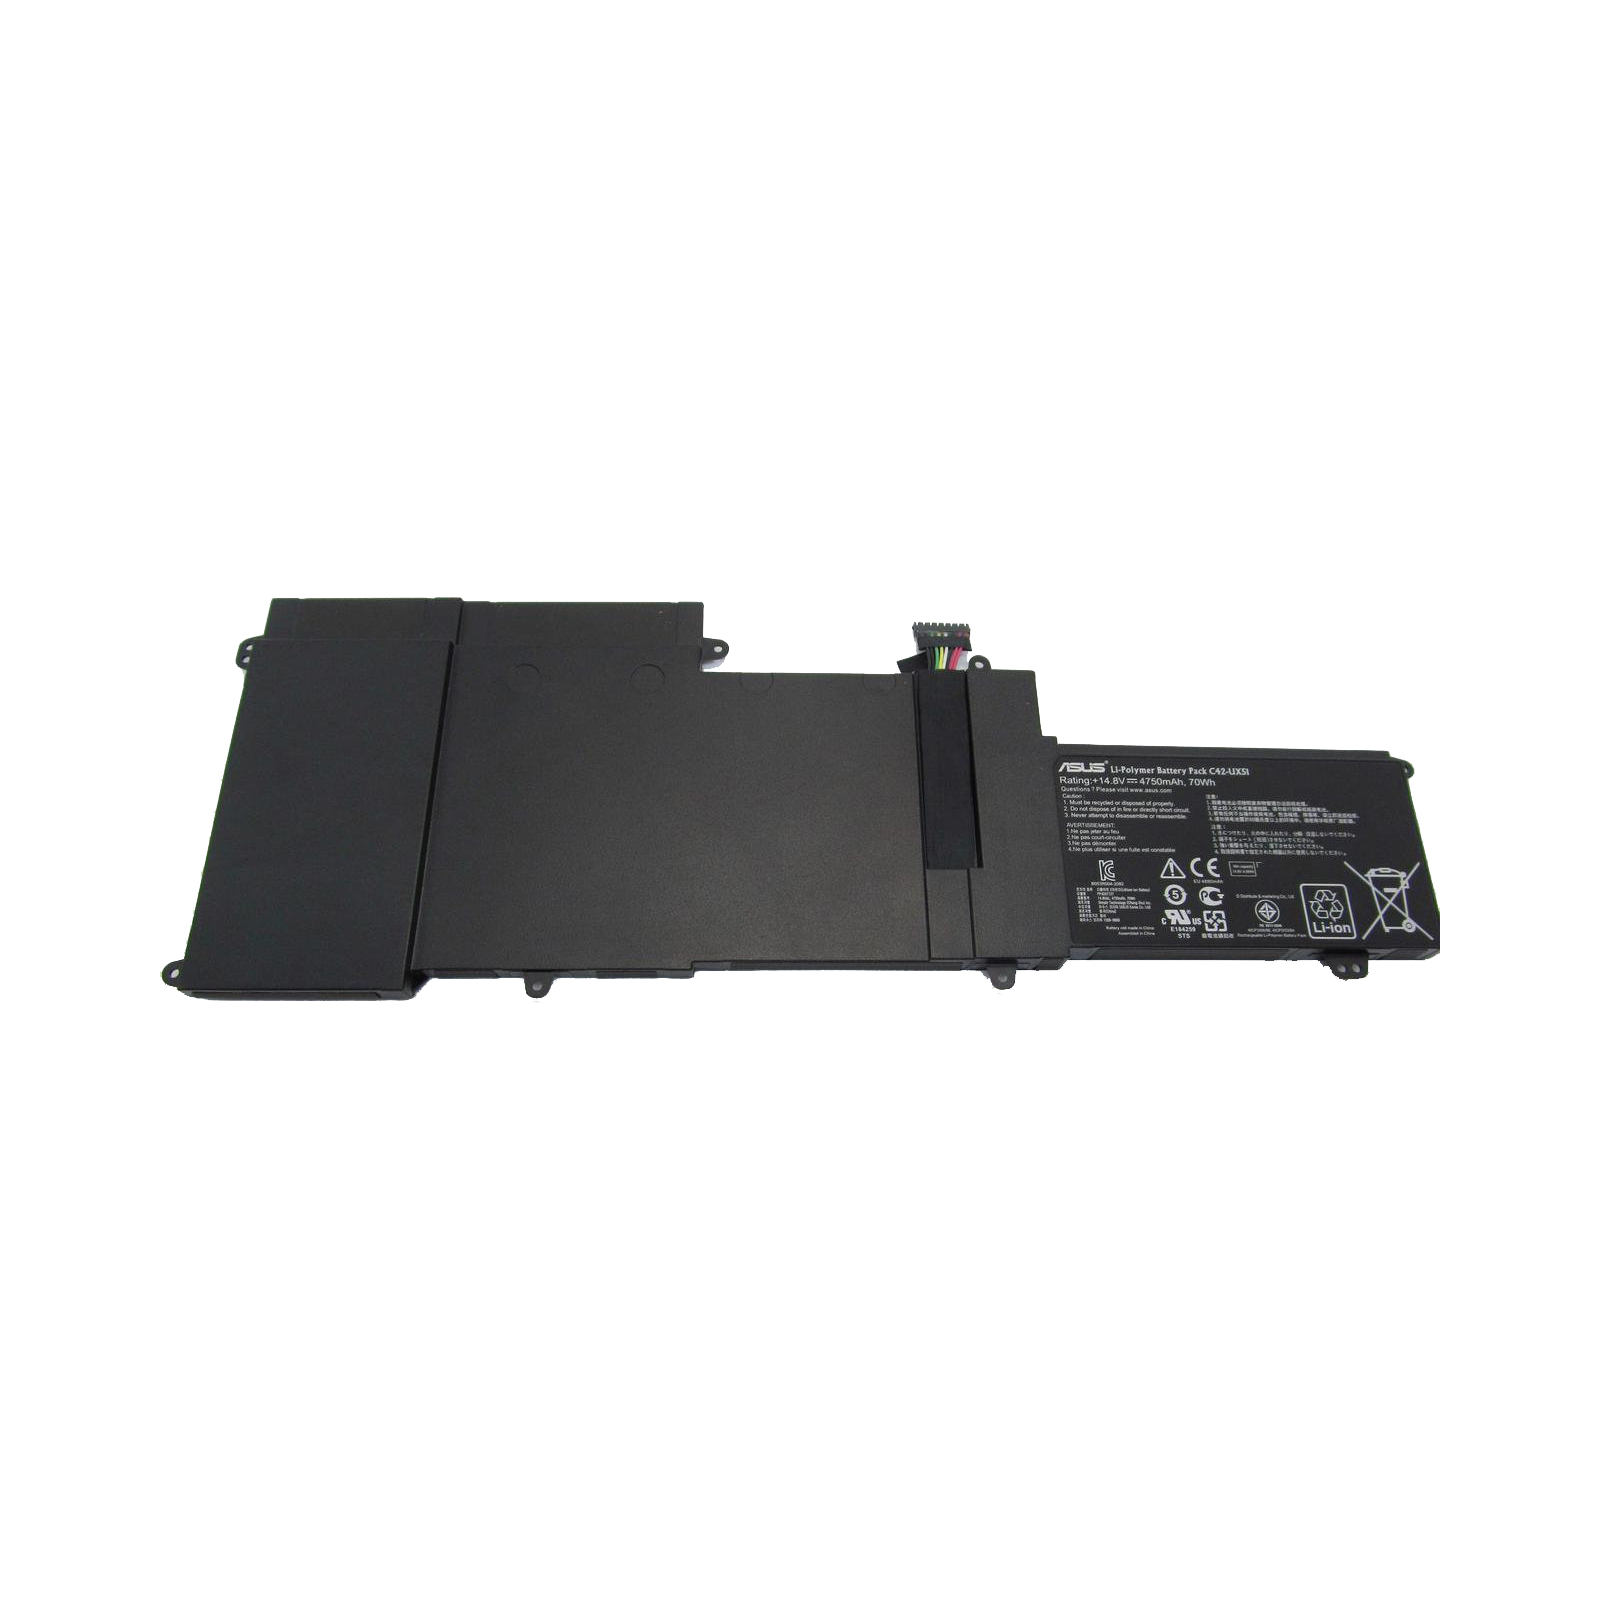 Акумулятор до ноутбука ASUS U500 C42-UX51, 4750mAh (70Wh), 4cell, 14.8V, Li-Pol, черная, (A47250)